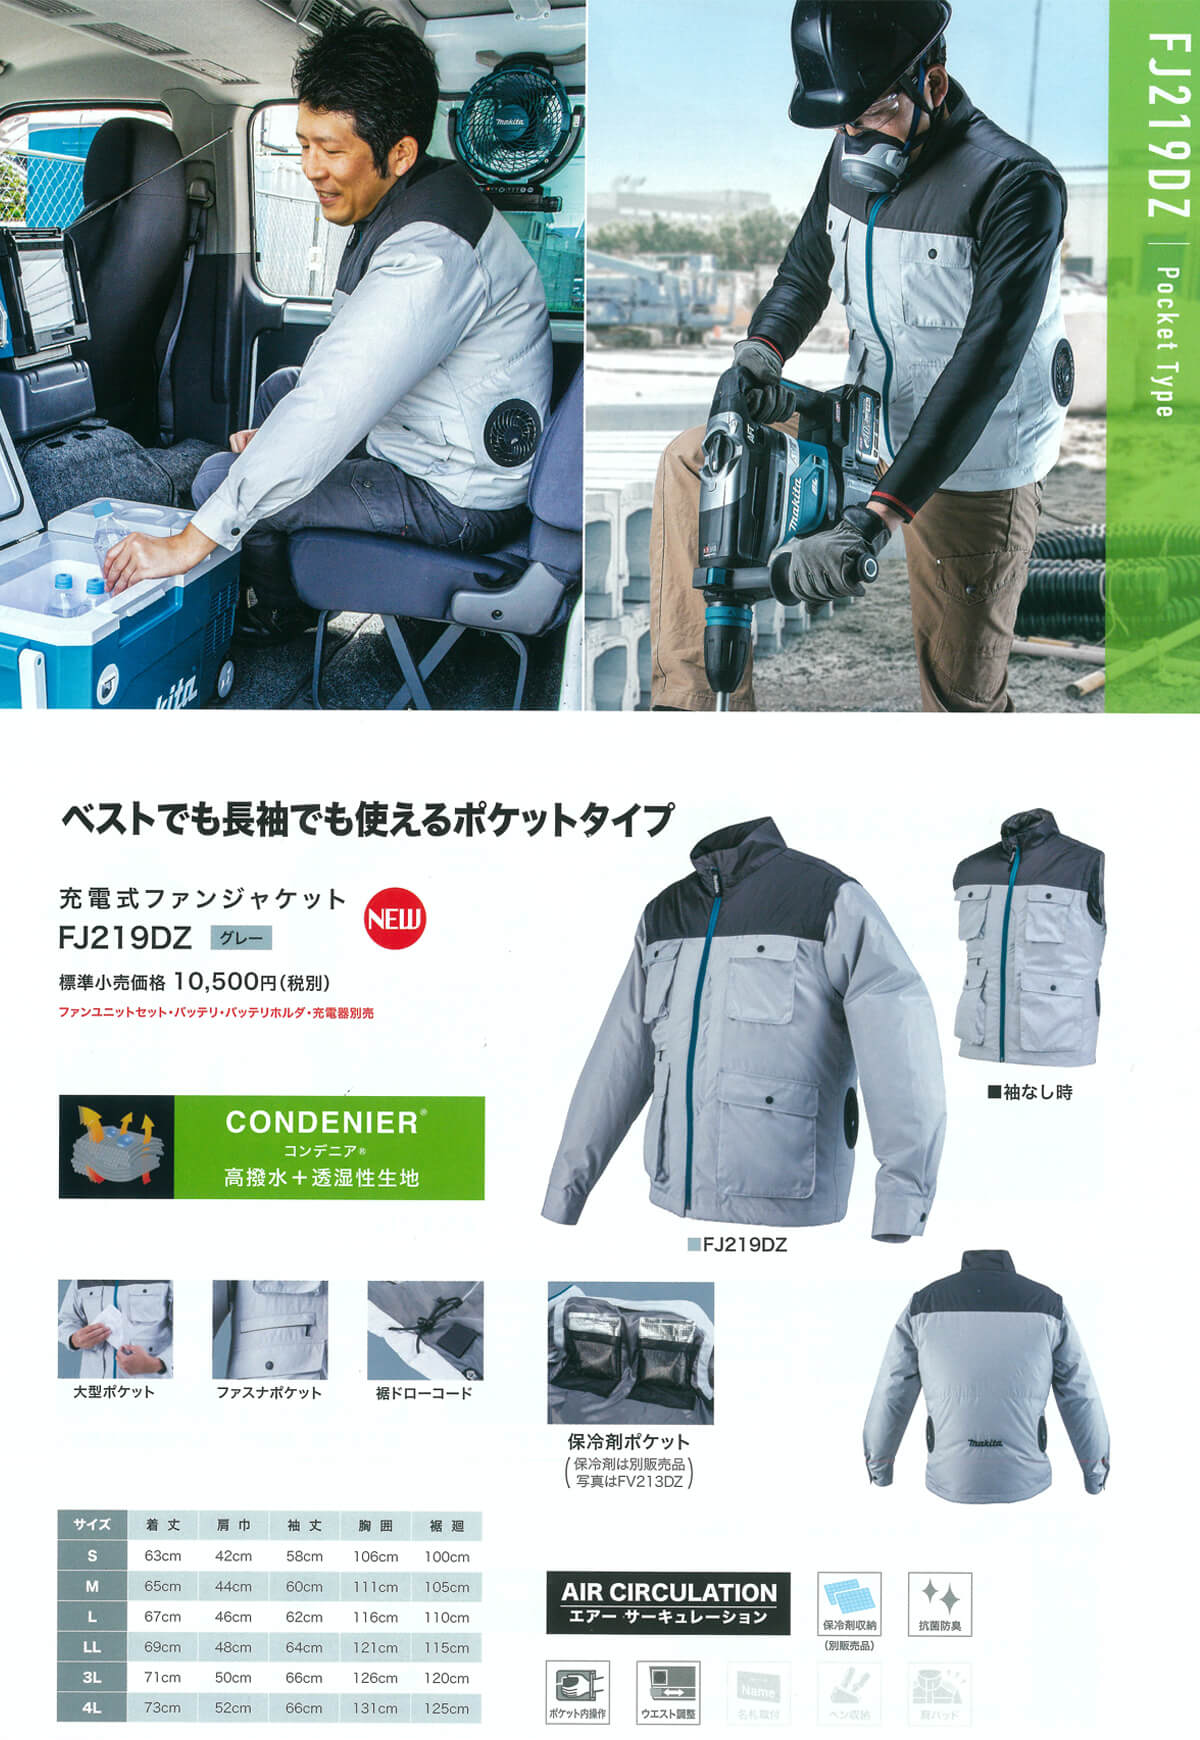 マキタ FJ219DZ 充電式ファンジャケットを【徹底解説】